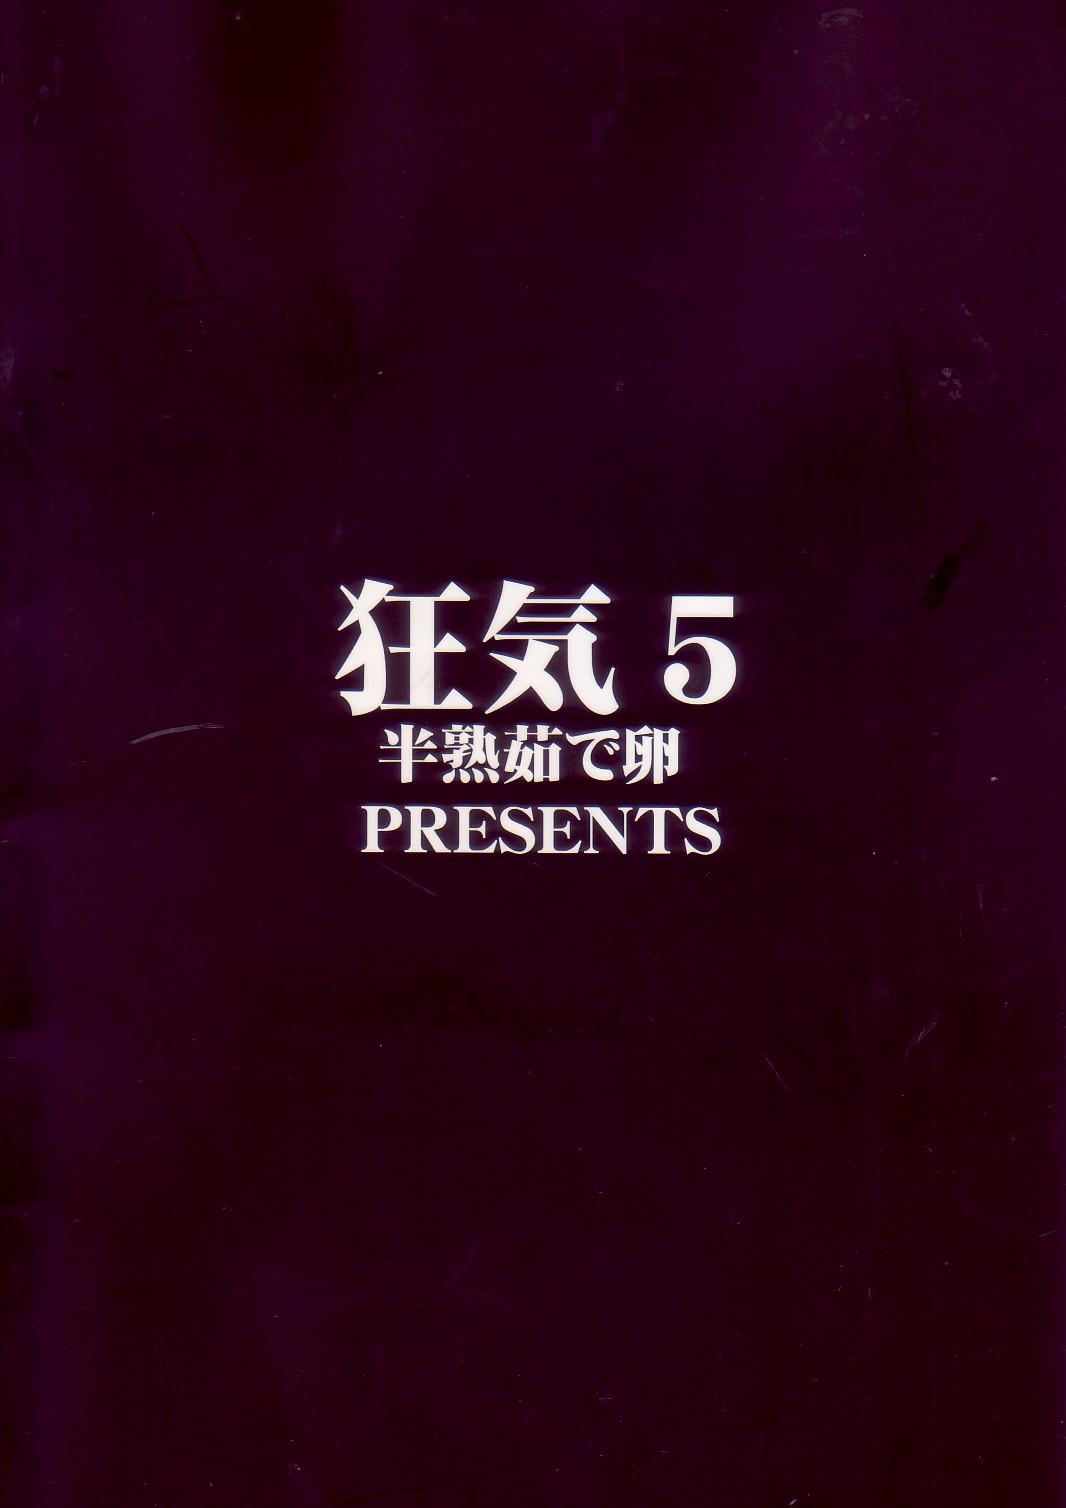 Kyouki vol.5 1